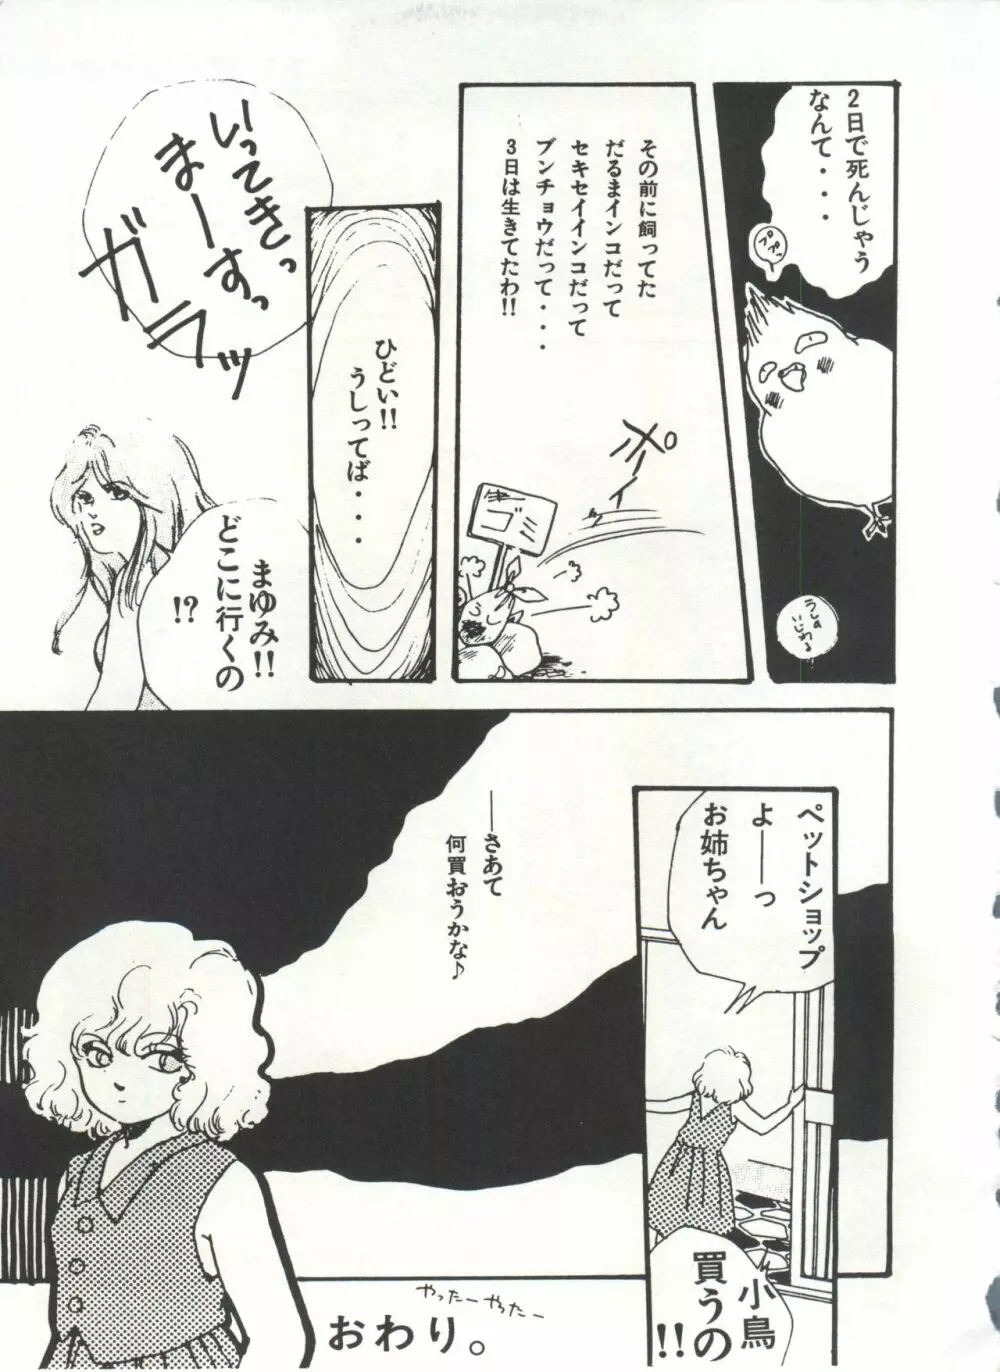 [Anthology] 美少女症候群(2) Lolita syndrome (よろず) 154ページ